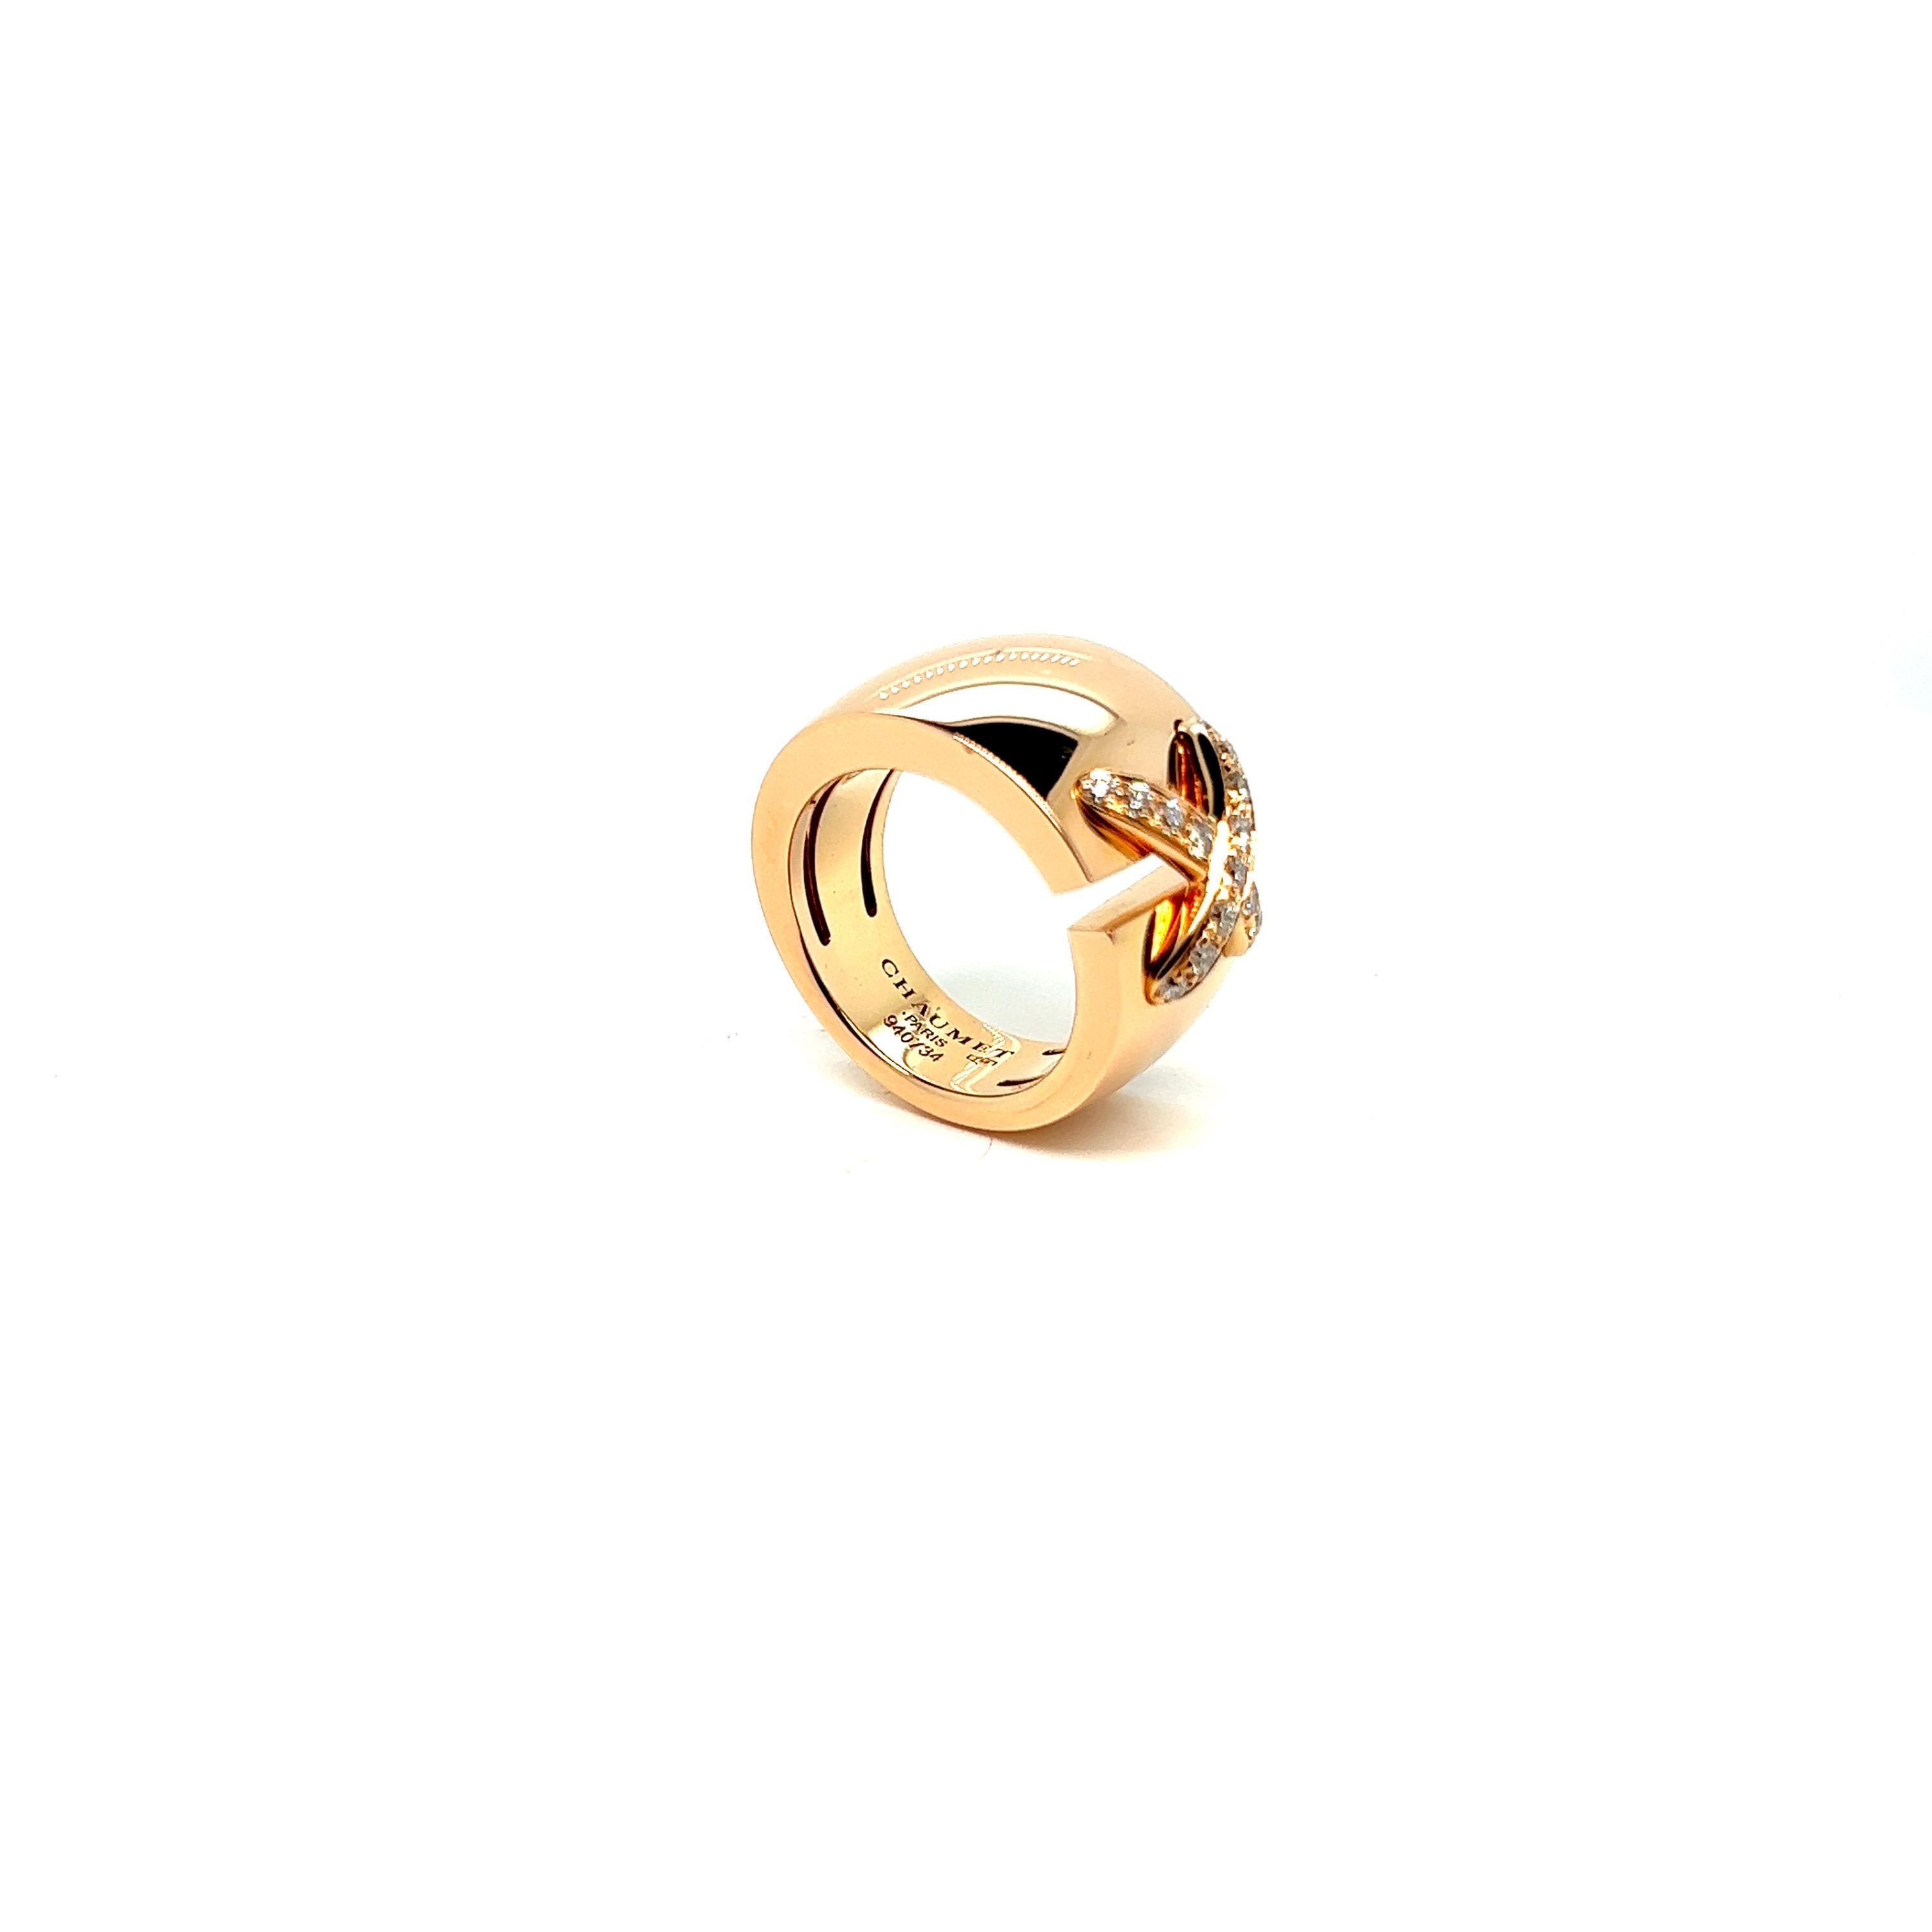 Bague Chaumet « Liens » XL à double grand modèle en or rose 18 carats et diamants 

Bague Brilliante grand modèle en or rose et diamants, composée d'un large anneau ouvert en or rose, serti au centre d'un beau lien incurvé serti de diamants taille